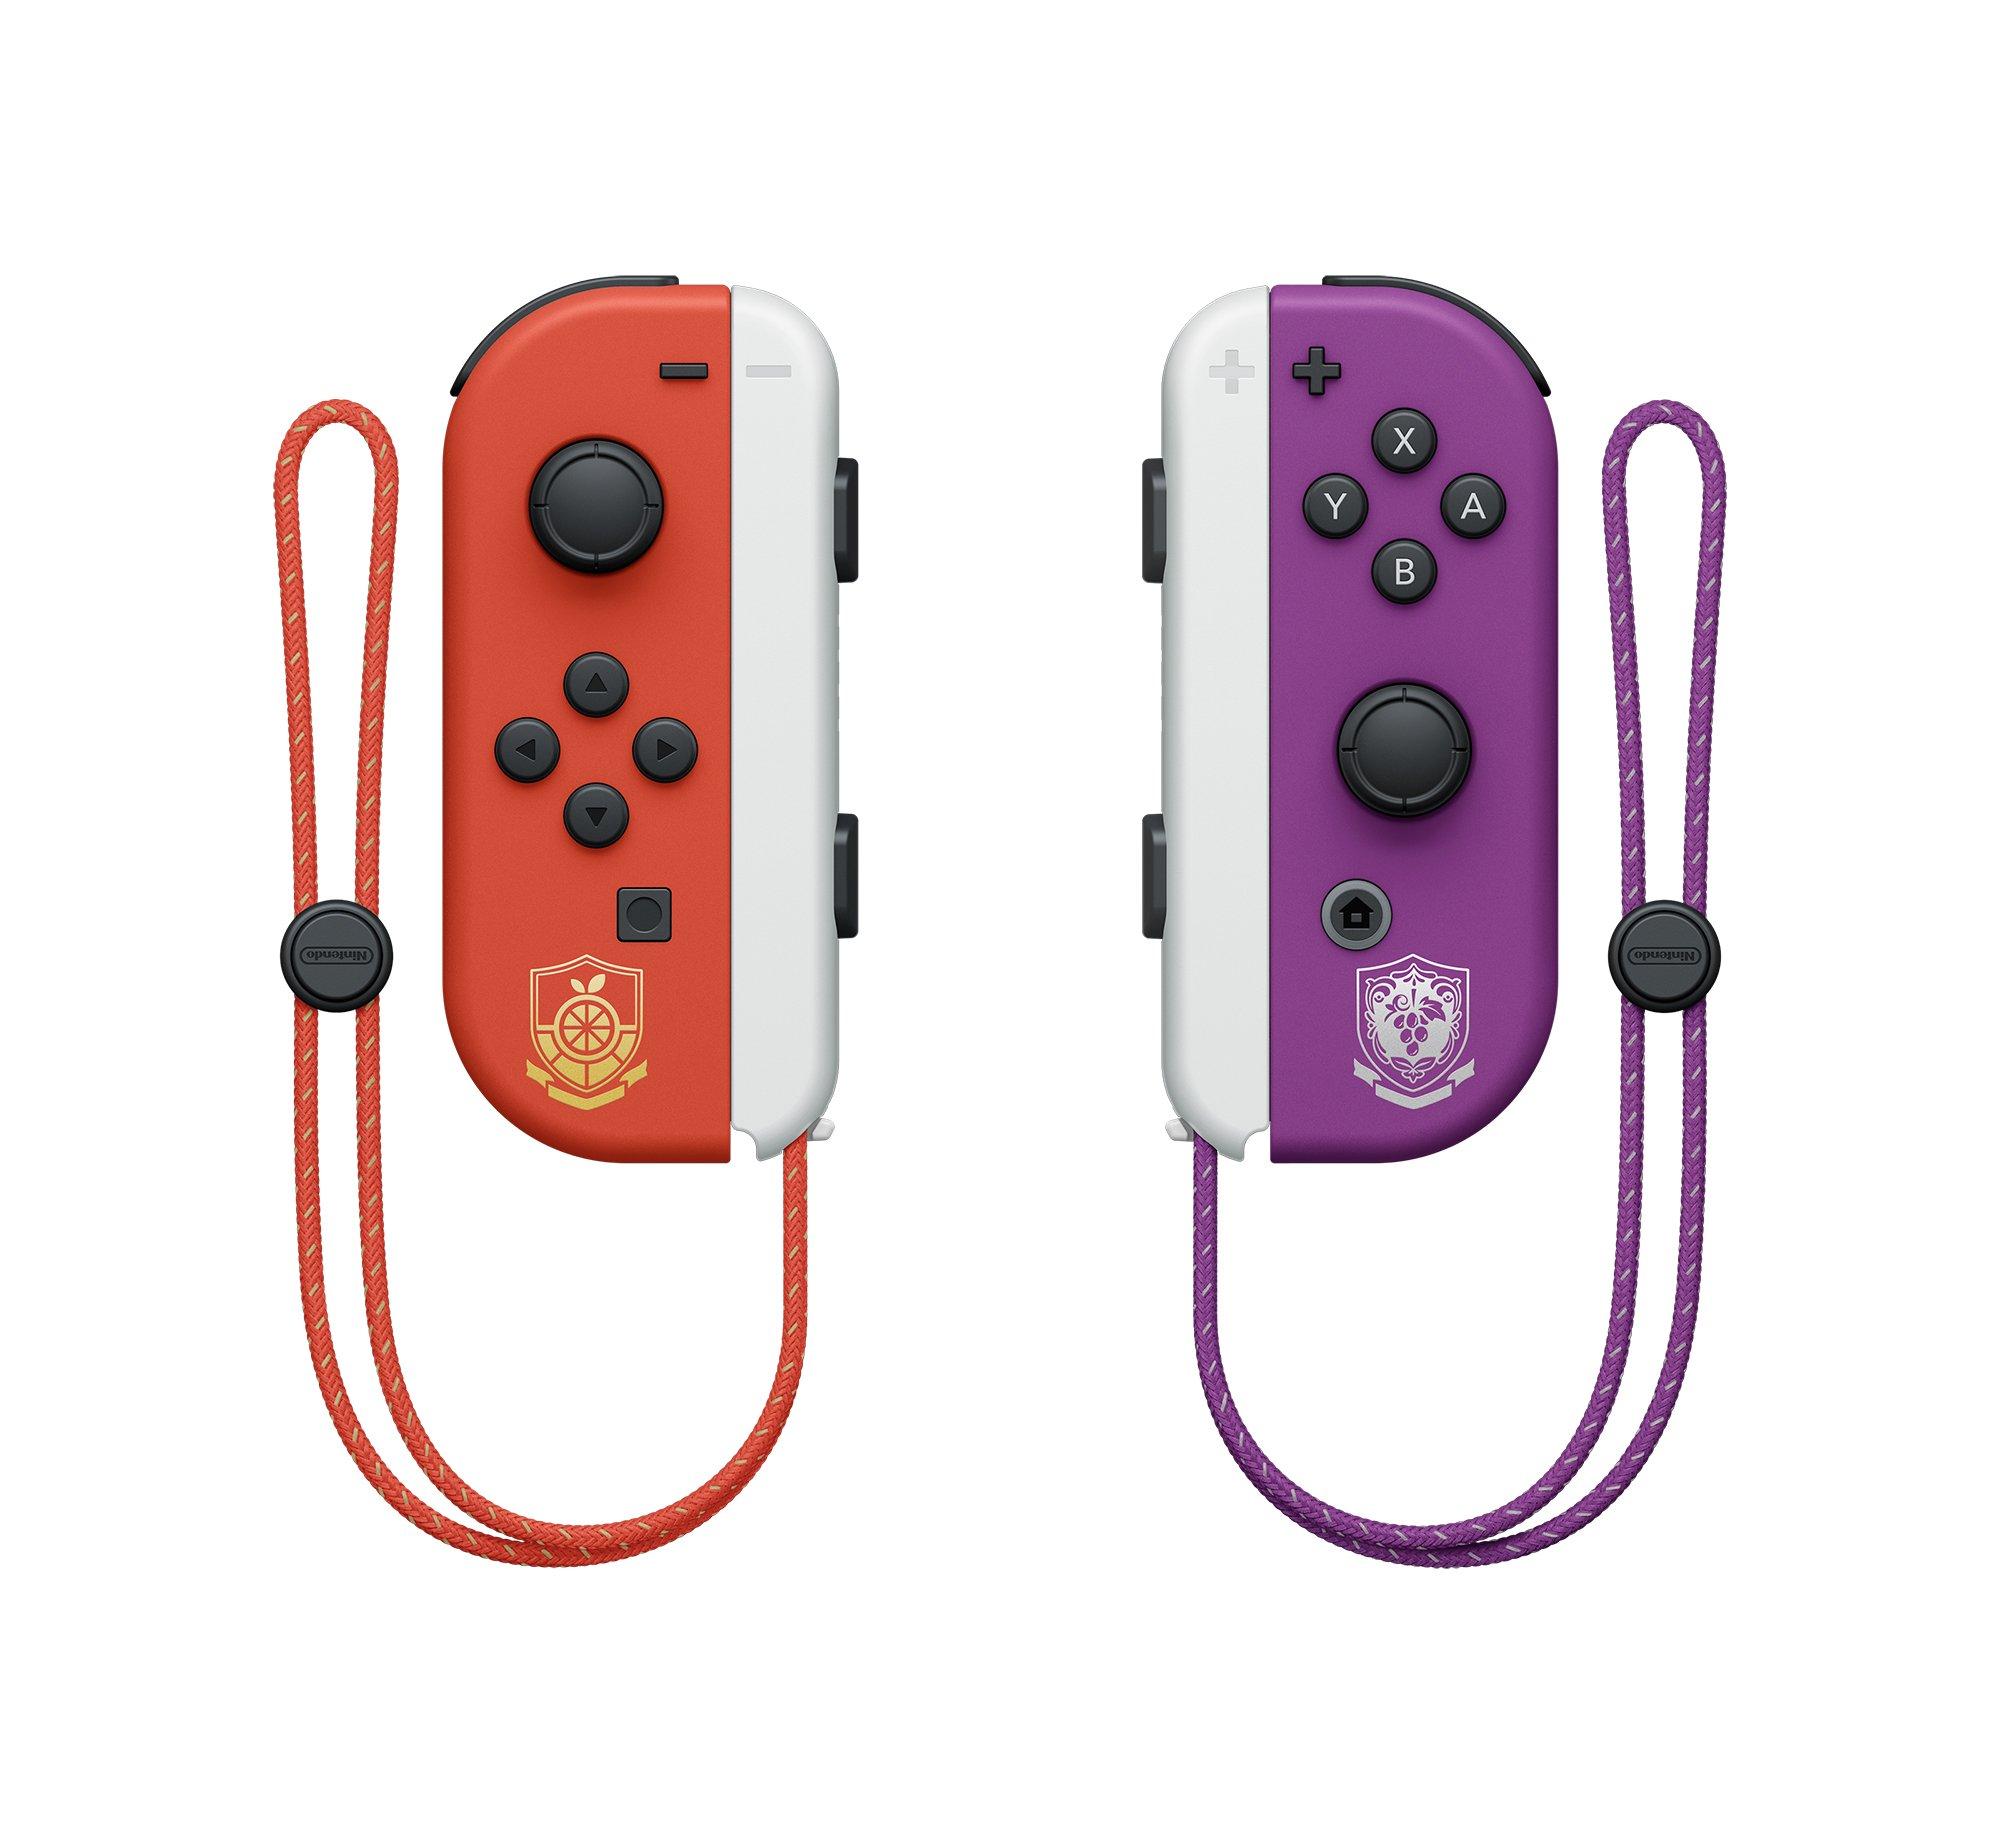 Nintendo Switch Oled Model Pokemon Scarlet & Violet Edition : Target